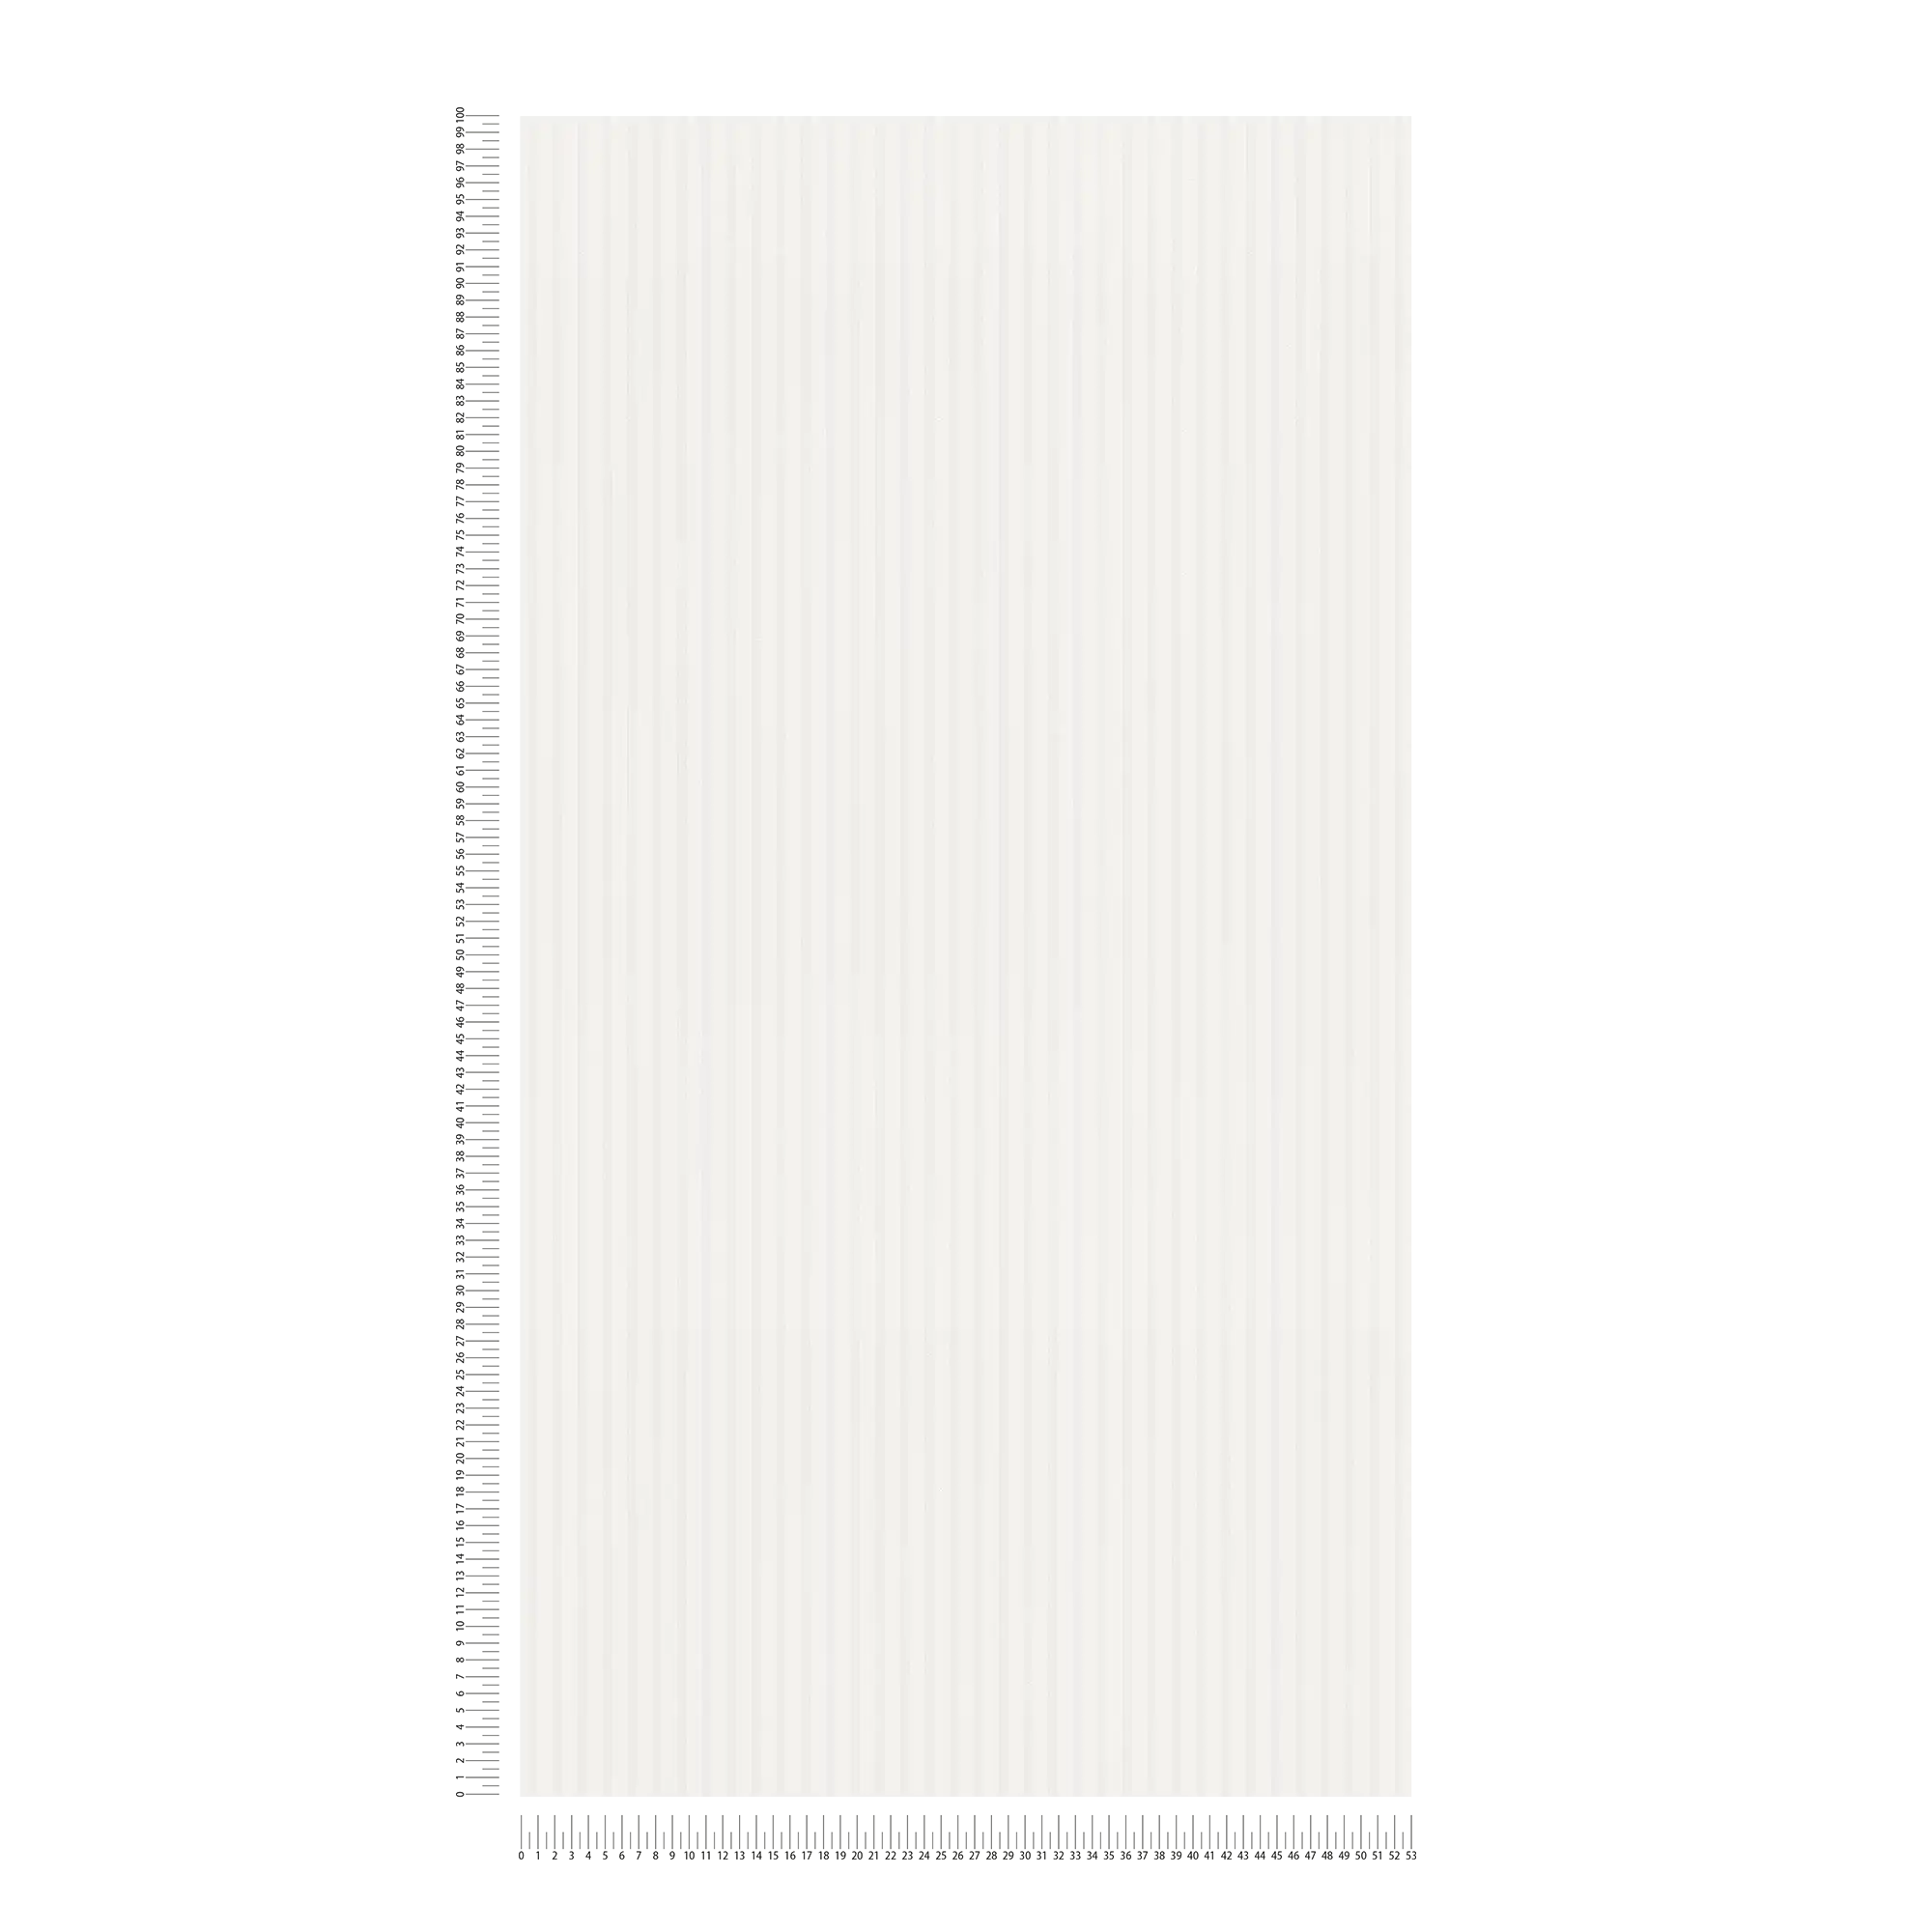             Papier peint à rayures étroites blanc clair - blanc, beige
        